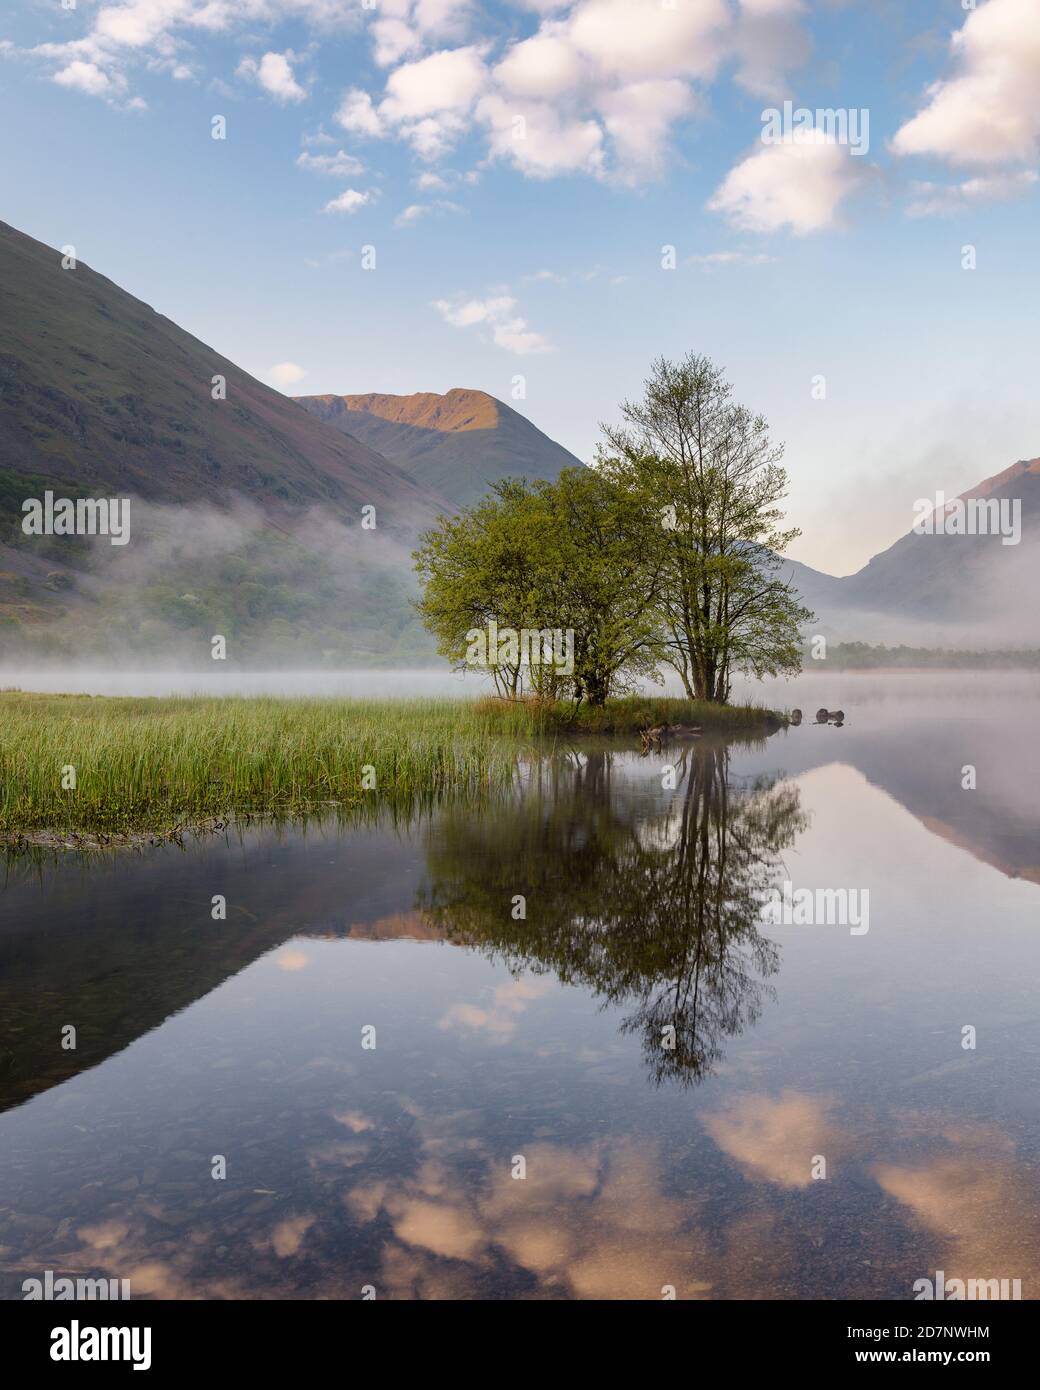 Groupe d'arbres sur une copse reflétant dans un lac avec beau ciel bleu. Prise dans Lake District, Royaume-Uni. Banque D'Images